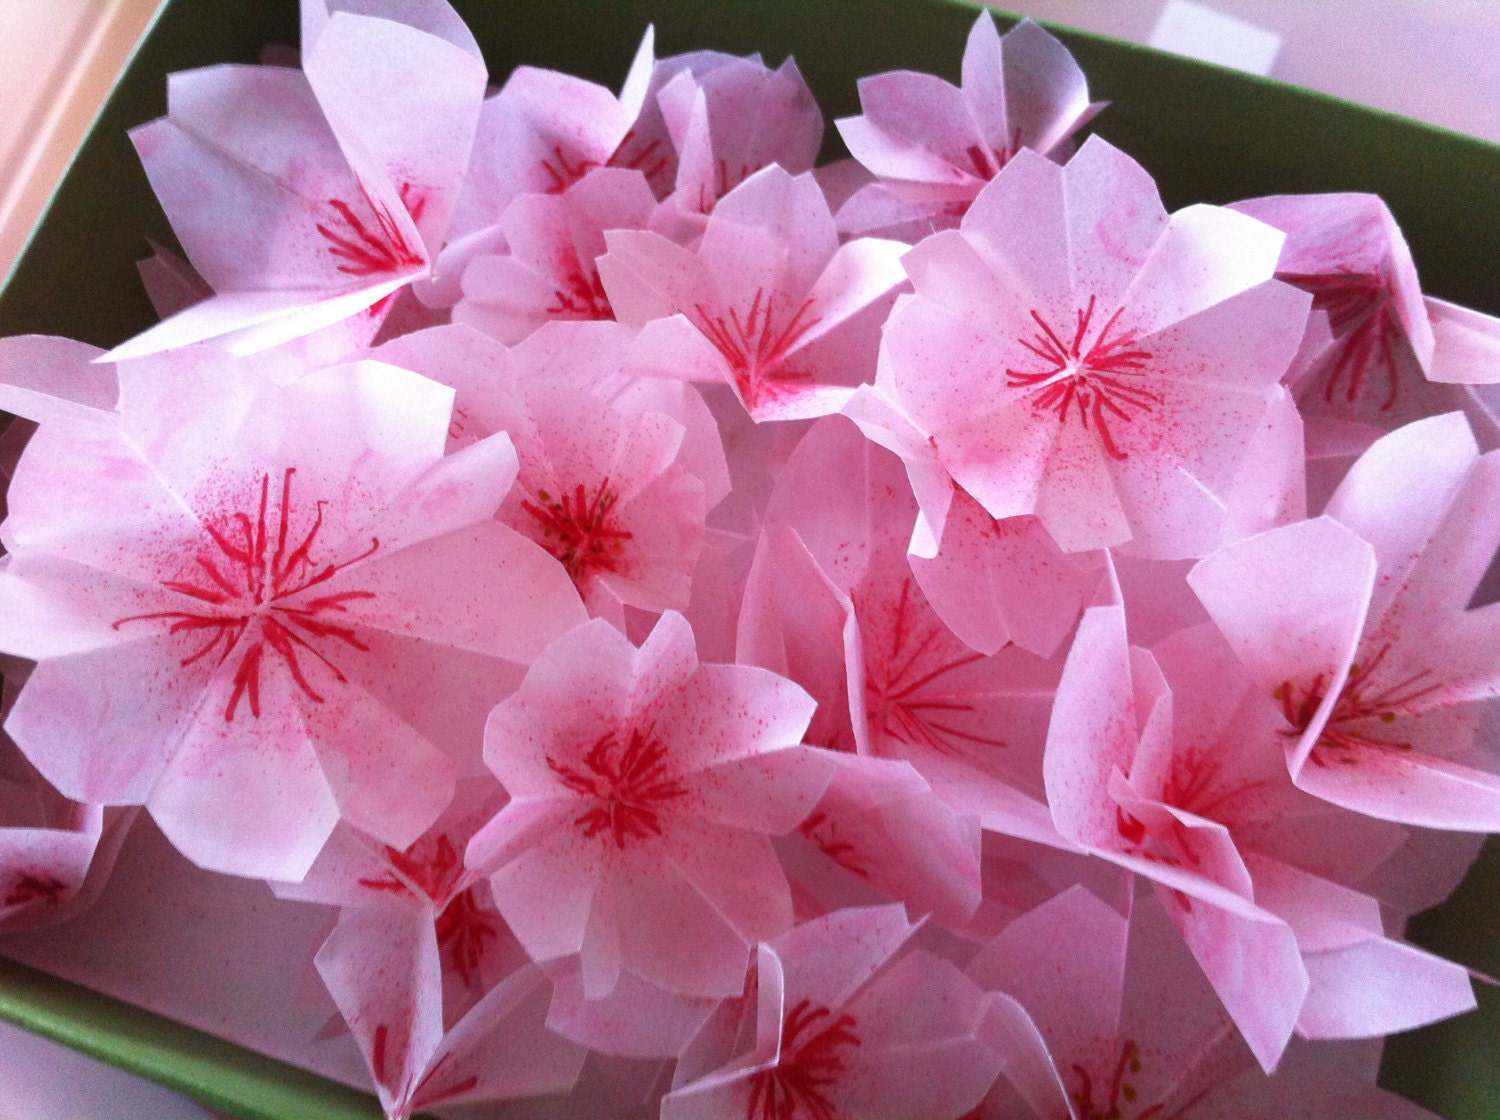 Origami cherry blossoms / Sakura flowers -5's